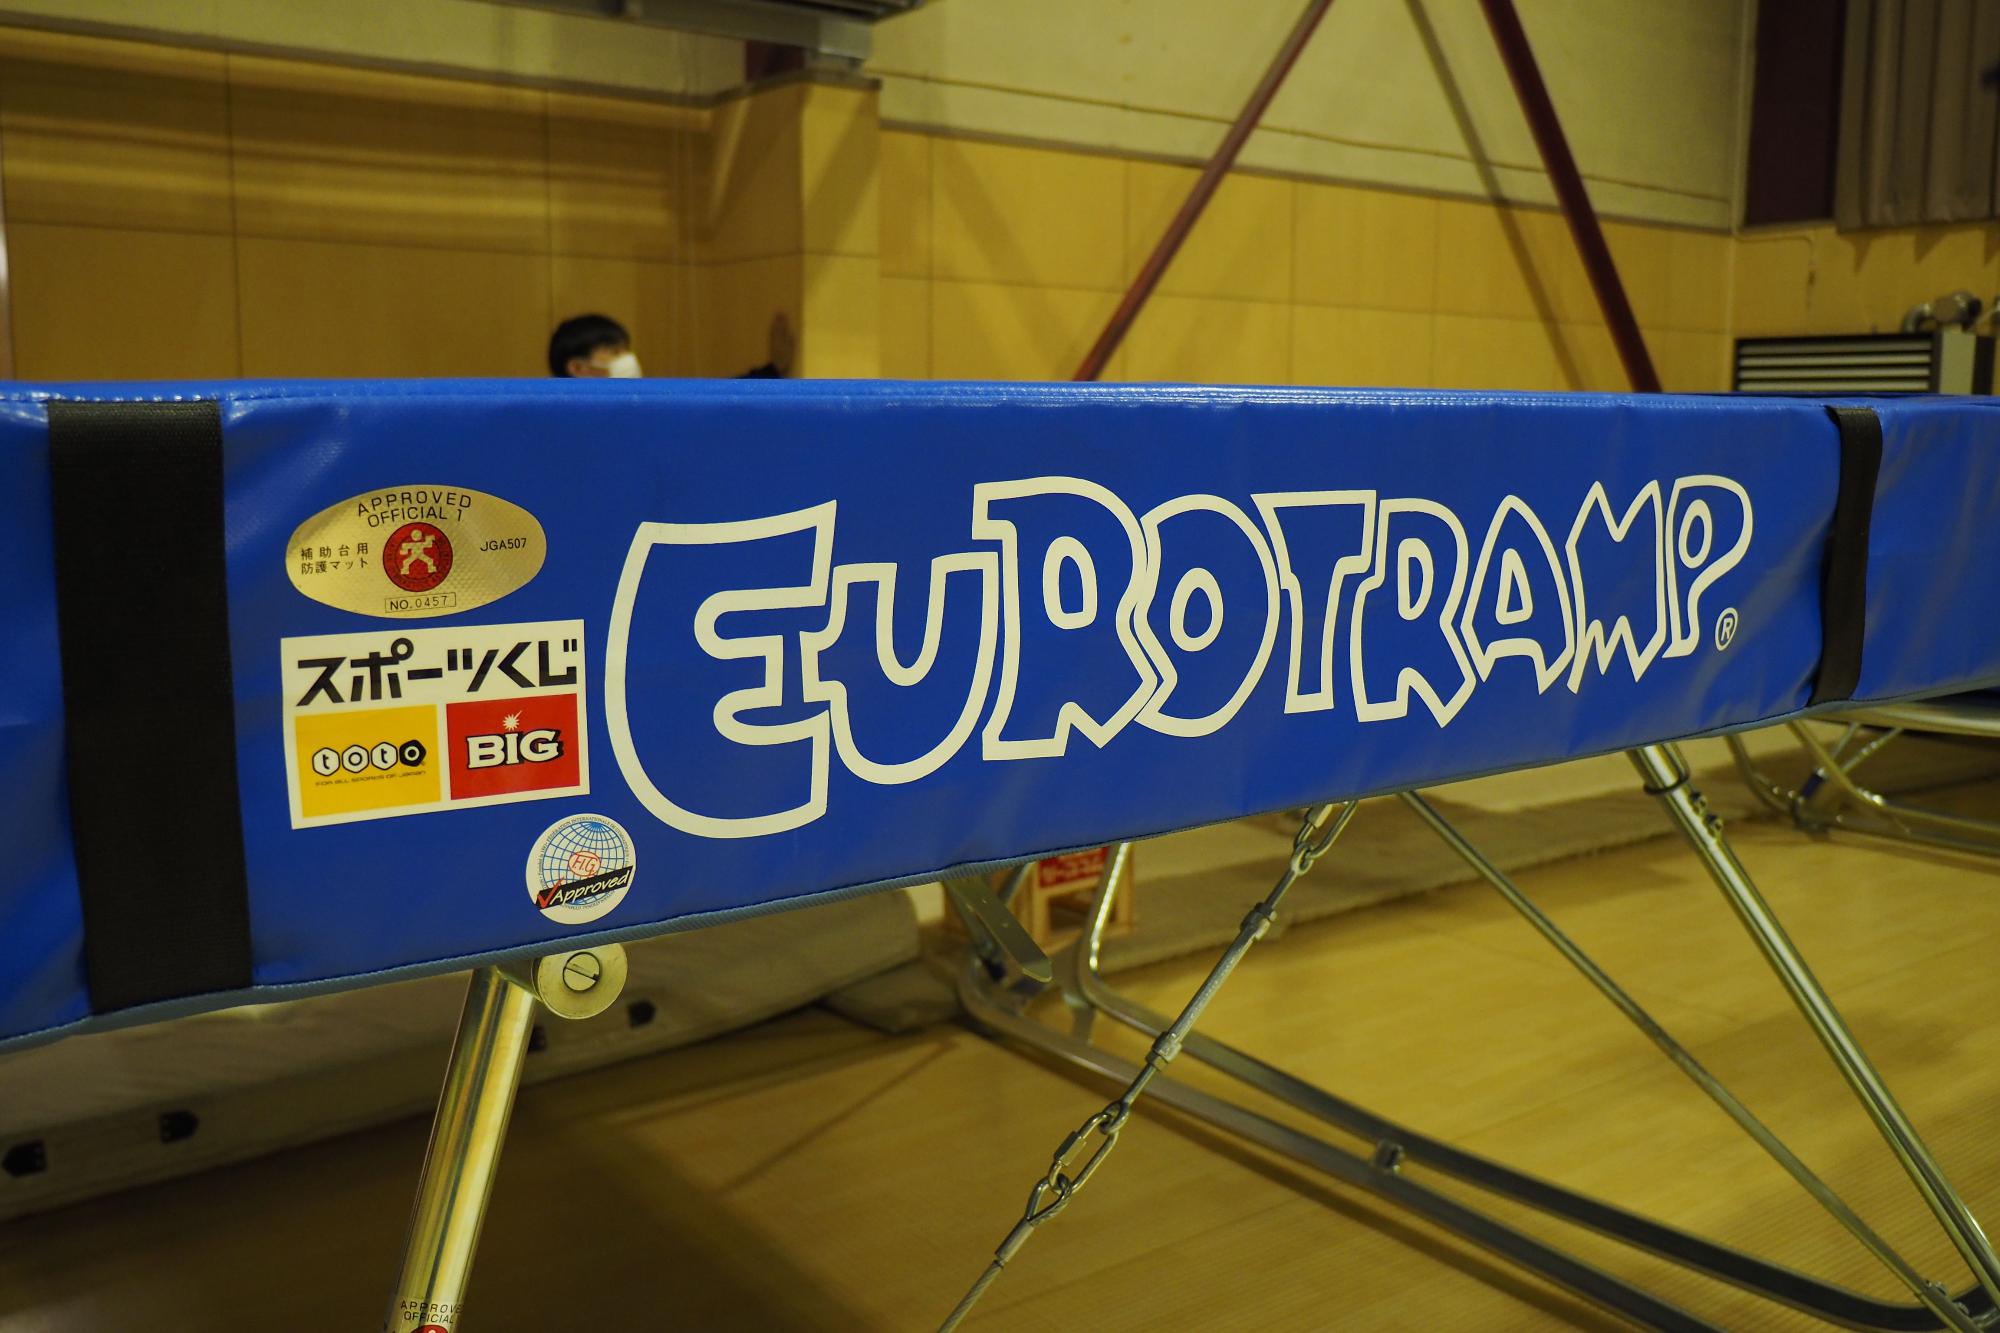 スポーツくじのロゴマークにユーロトランポリンと英語で表示されている競技用ユーロトランポリンアルティメットの写真